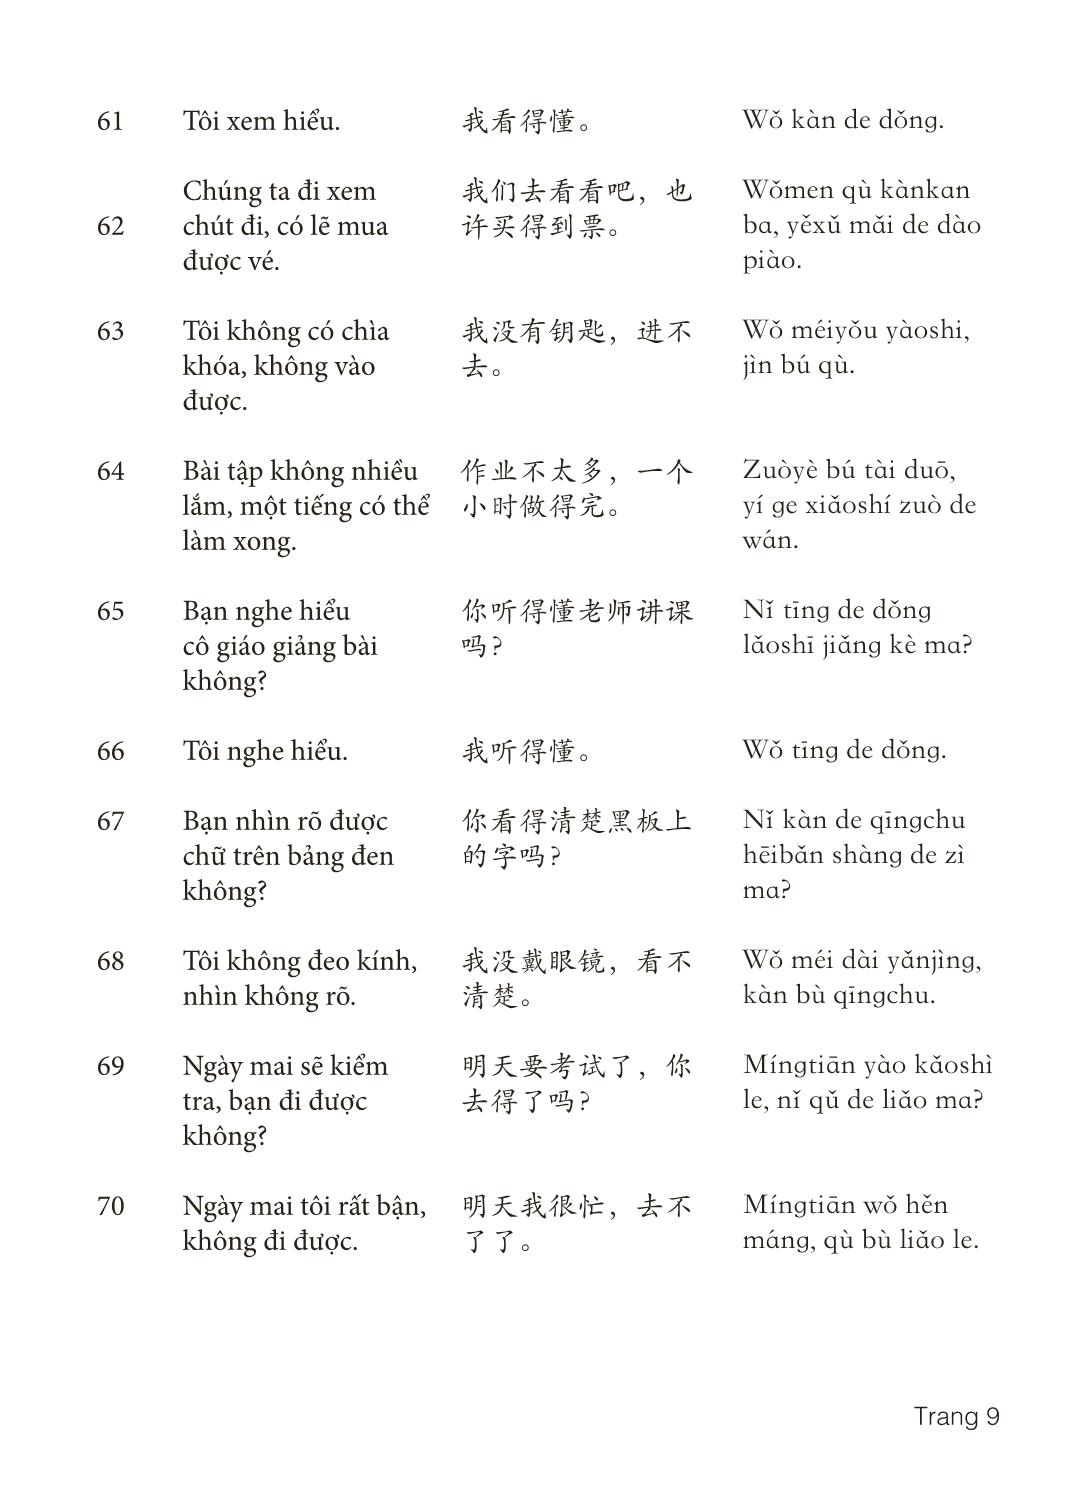 3000 Câu đàm thoại tiếng Hoa - Phần 23 trang 9